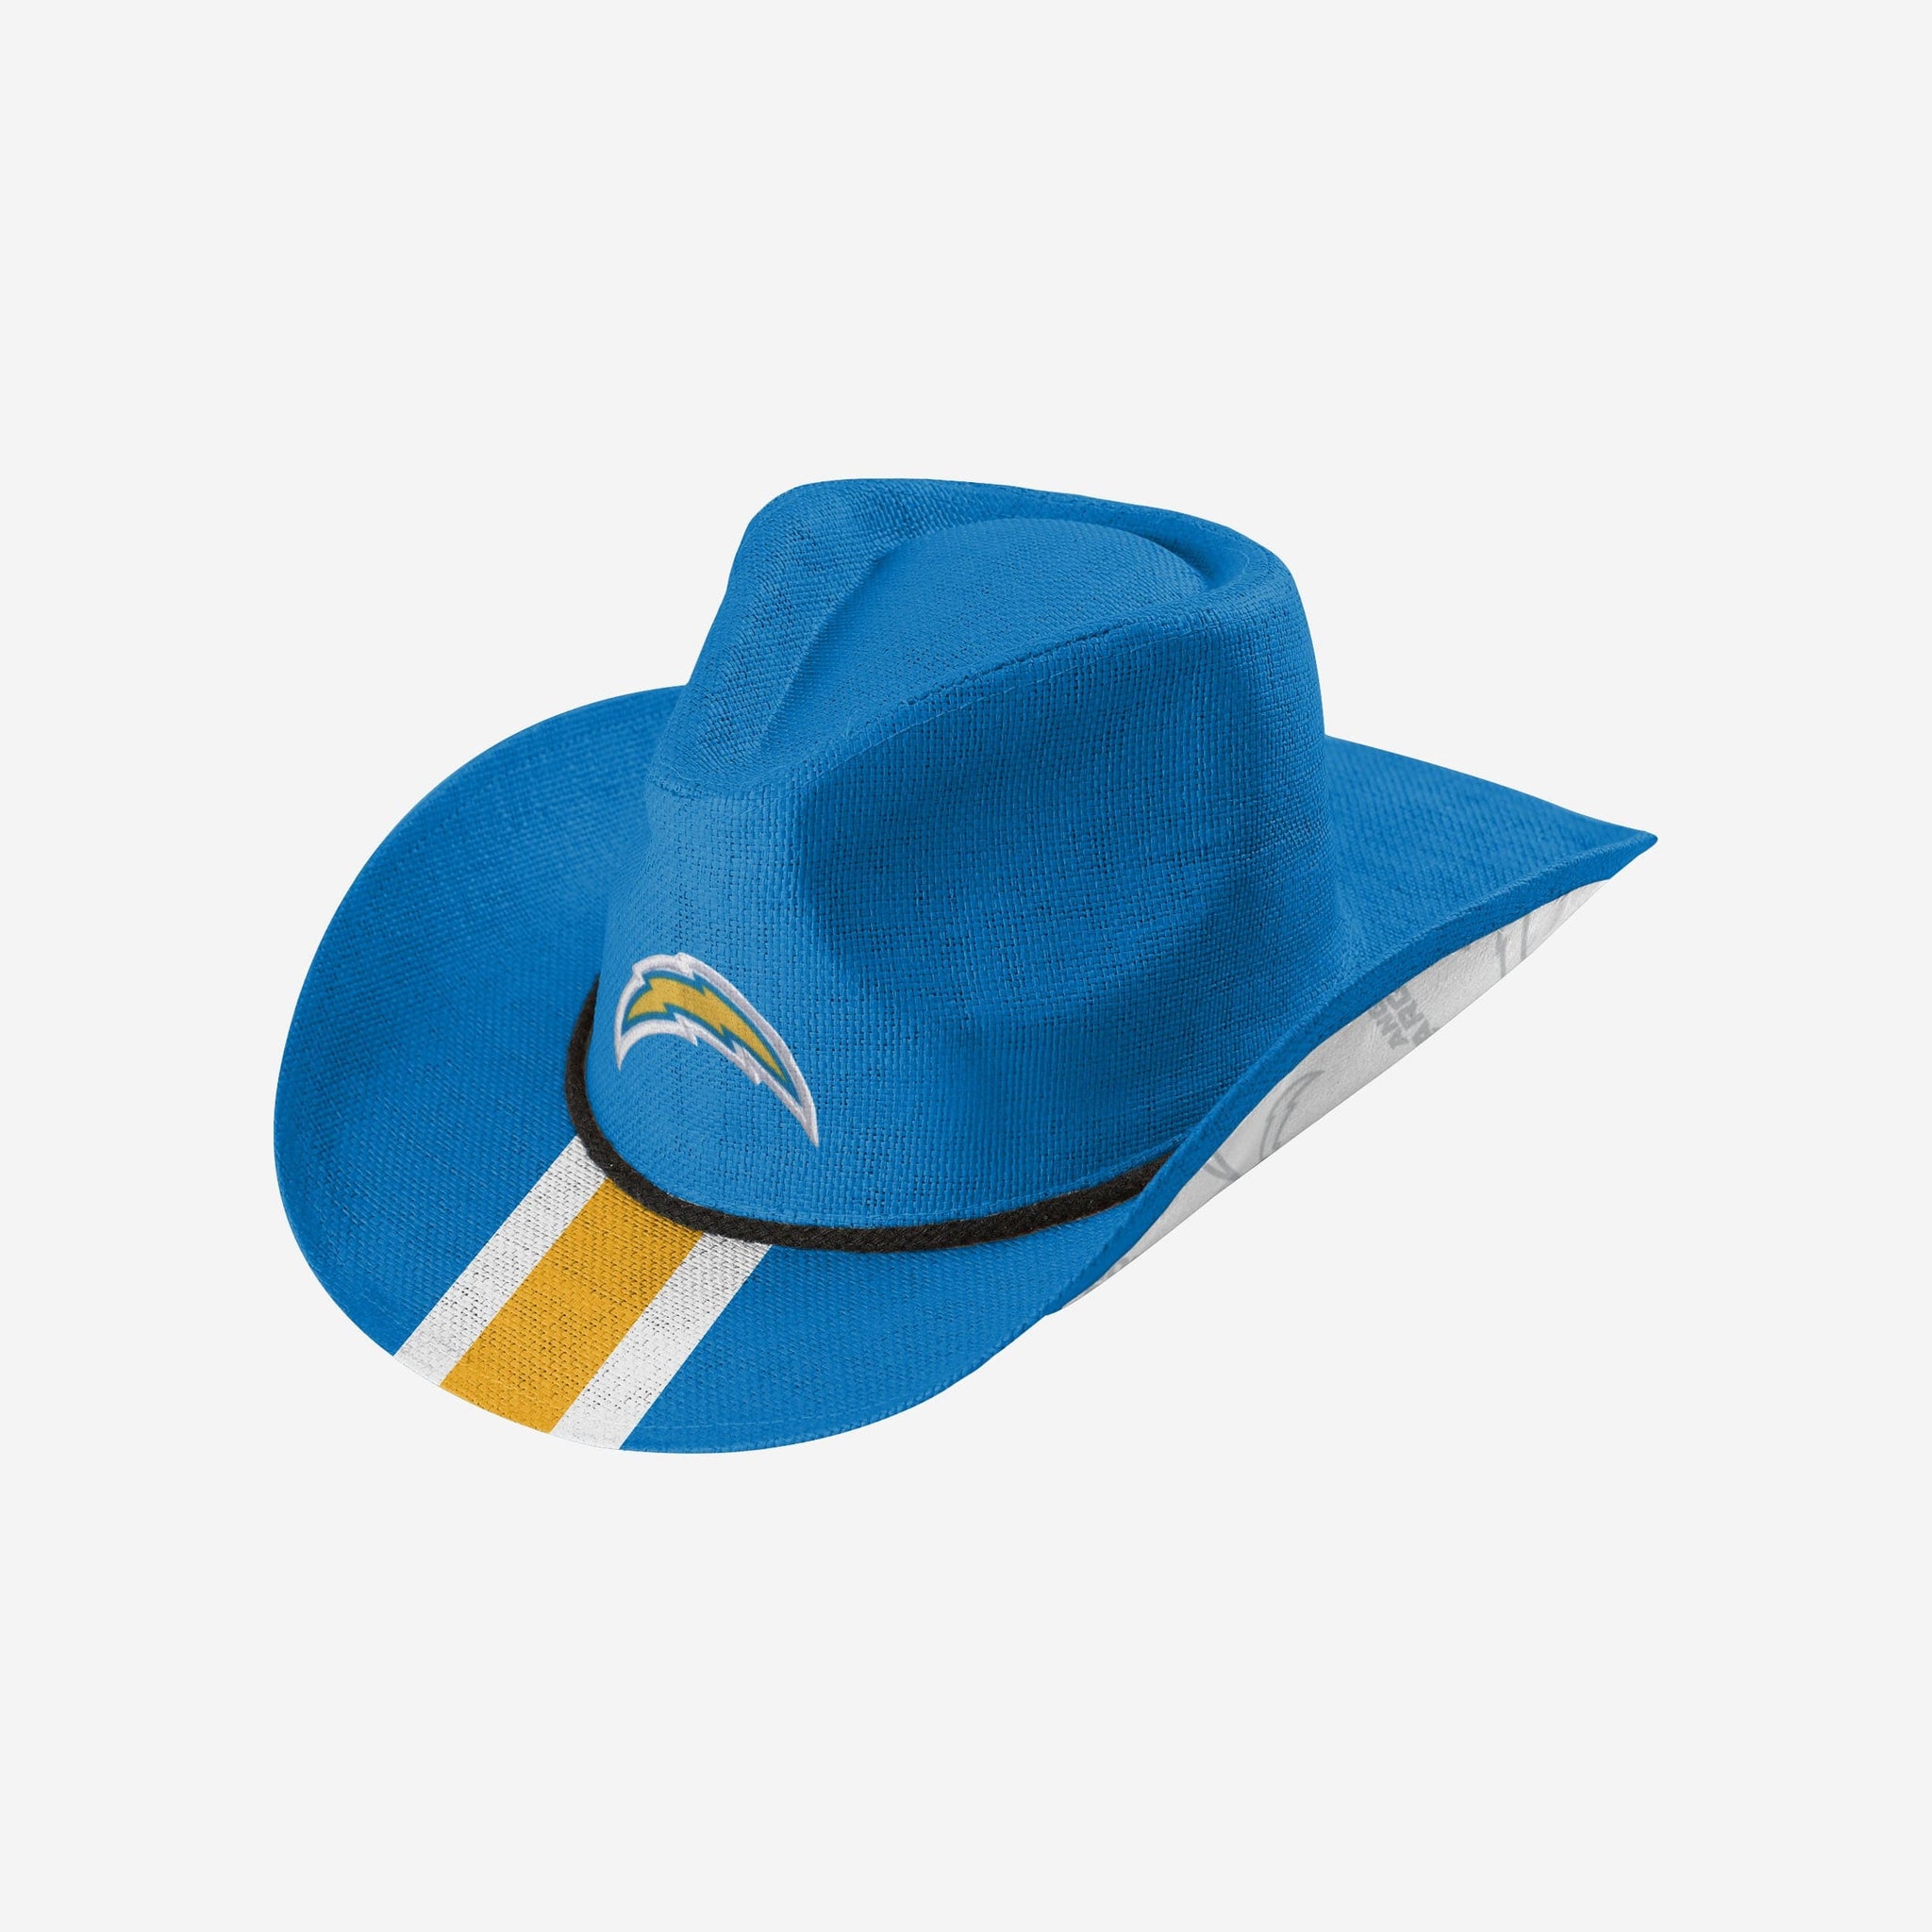 Genuine Merchandise Atlanta Braves Baseball Hat/Cap Men - $6